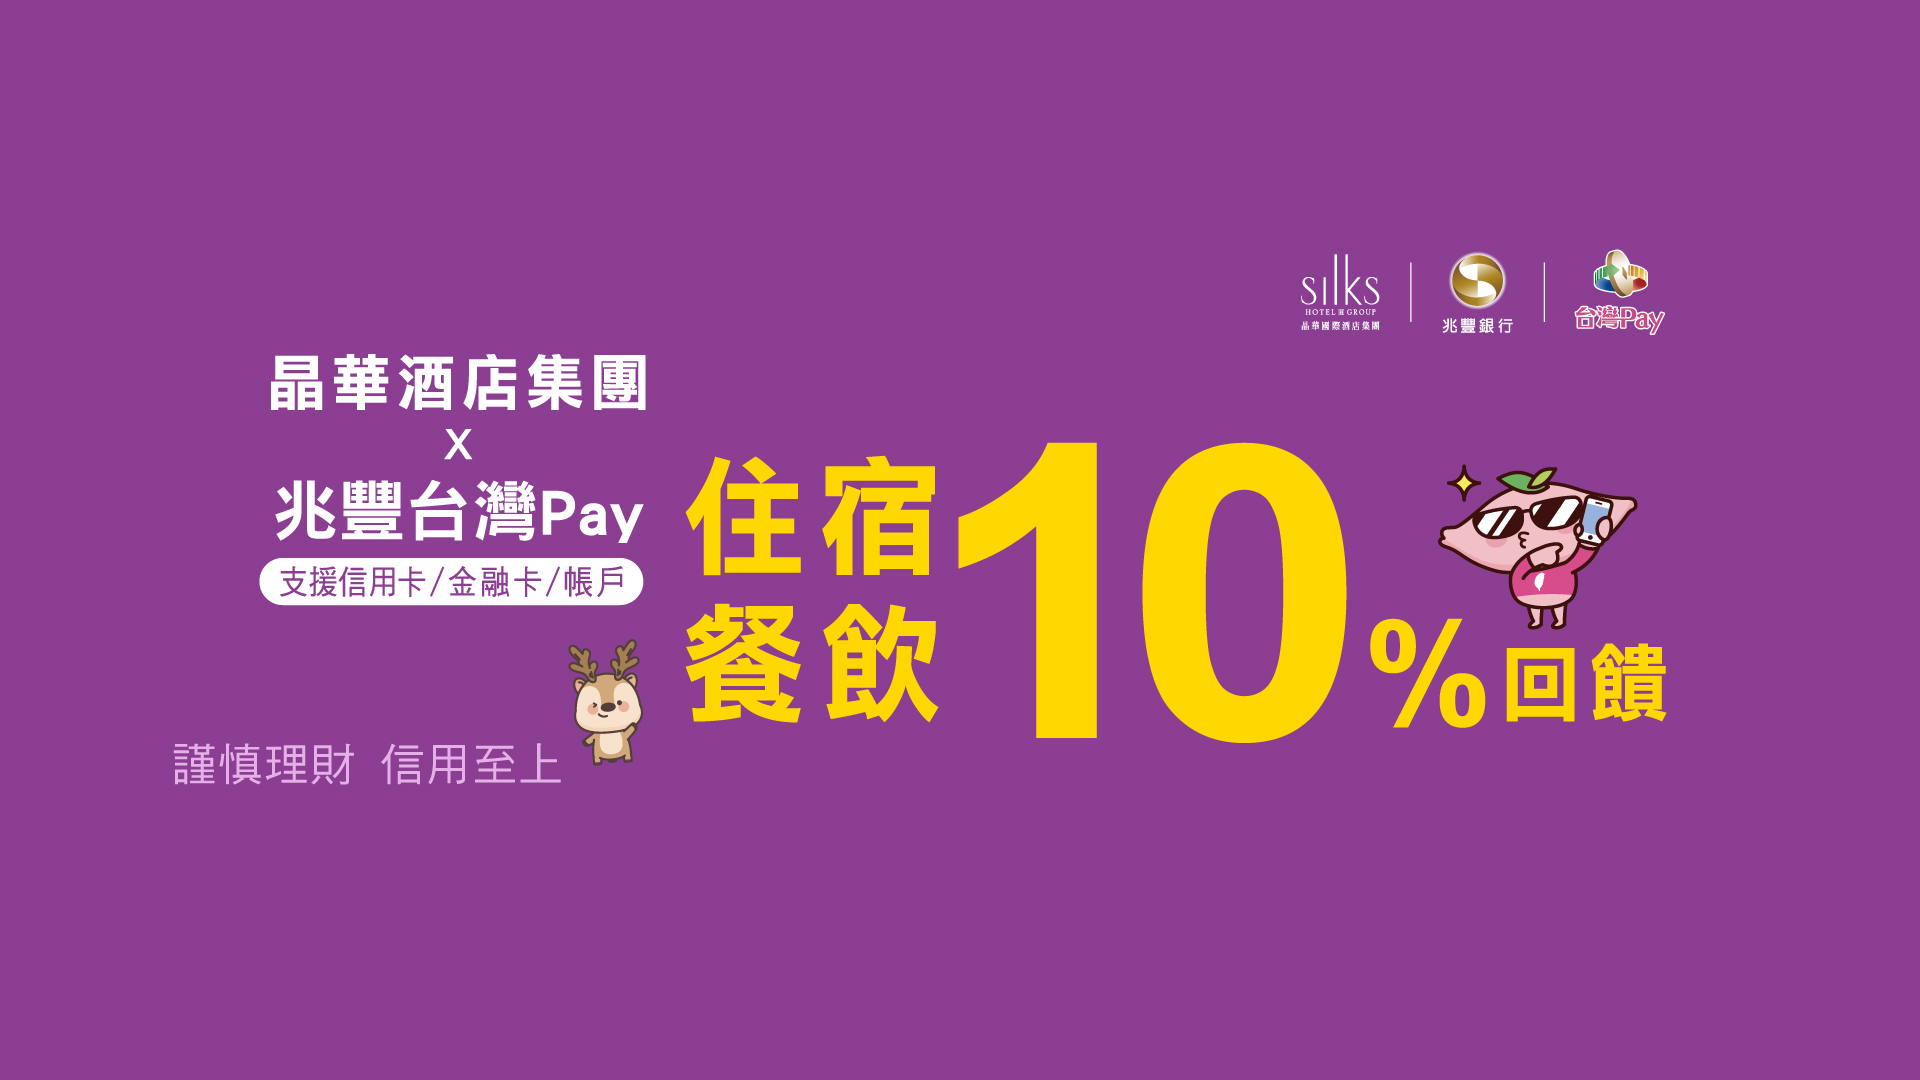 晶華酒店集團X台灣Pay 住宿餐飲樂享10%回饋